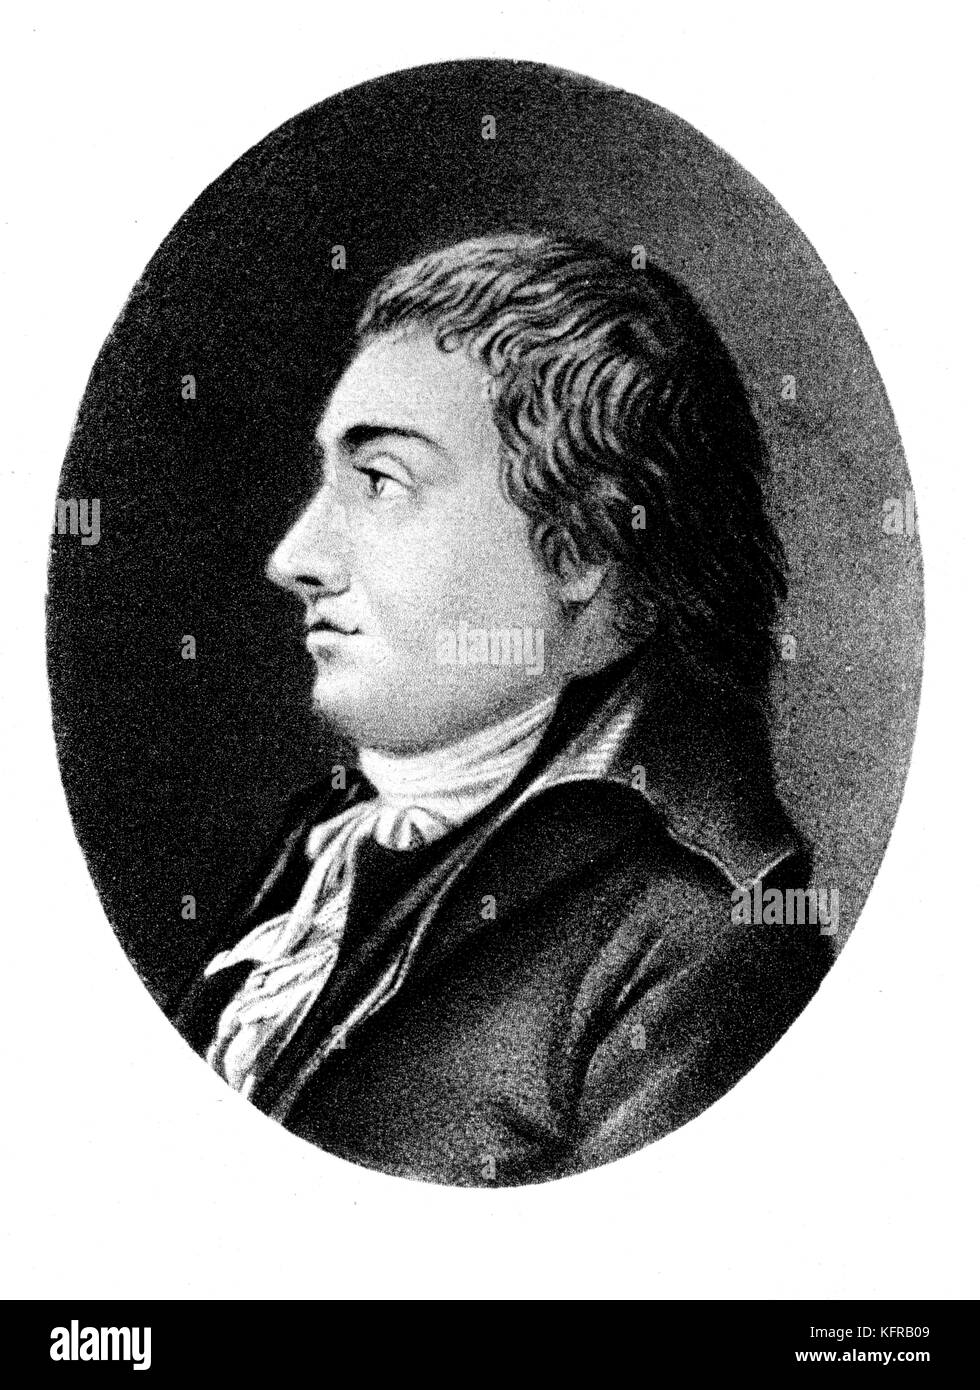 Johann Rudolf Zumsteeg, compositeur et chef d'orchestre allemand, 10 janvier, 1760 - 27 janvier, 1802. Banque D'Images